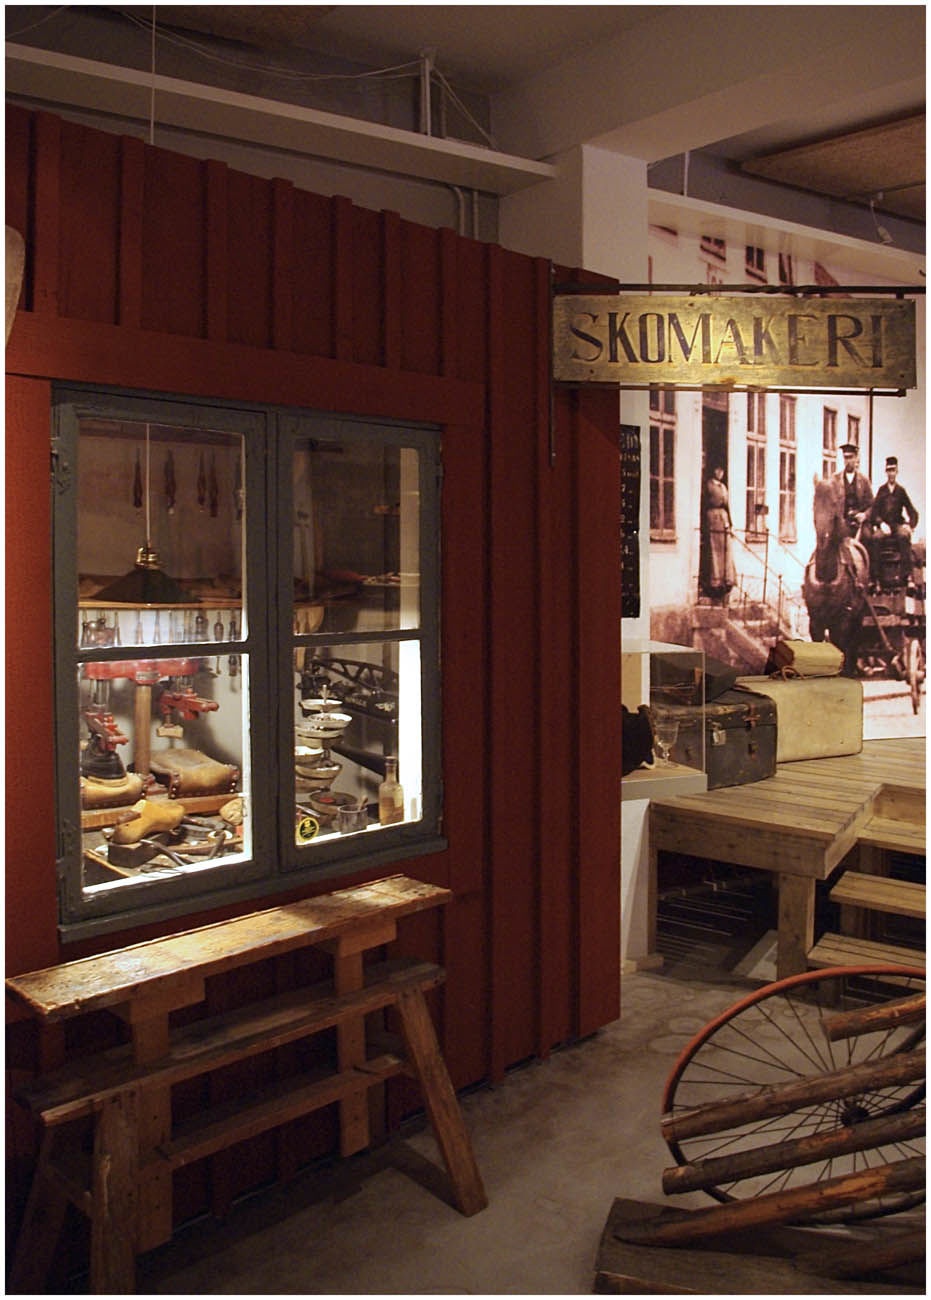 Smålands museum